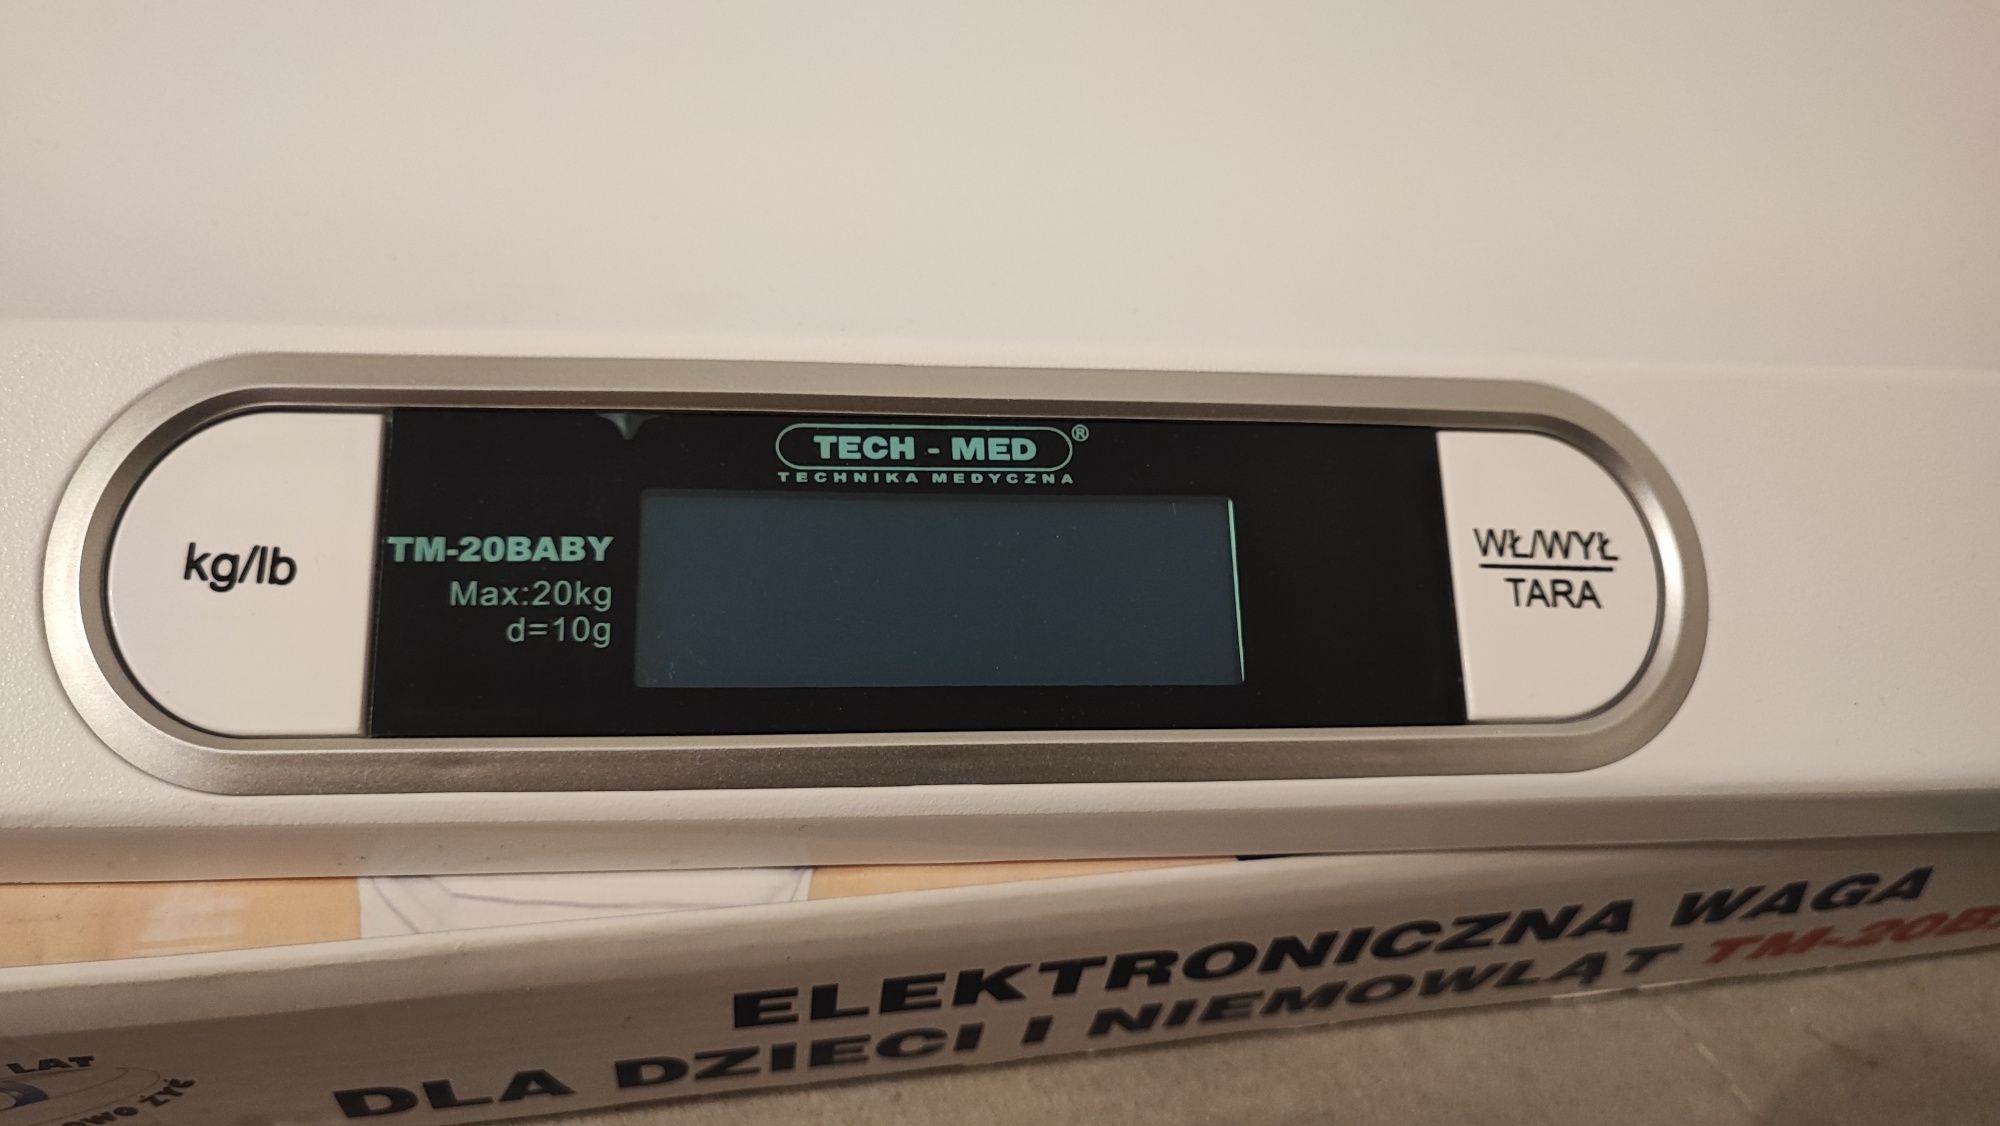 Elektroniczna waga dla dzieci i niemowląt TM-20Baby tech-med